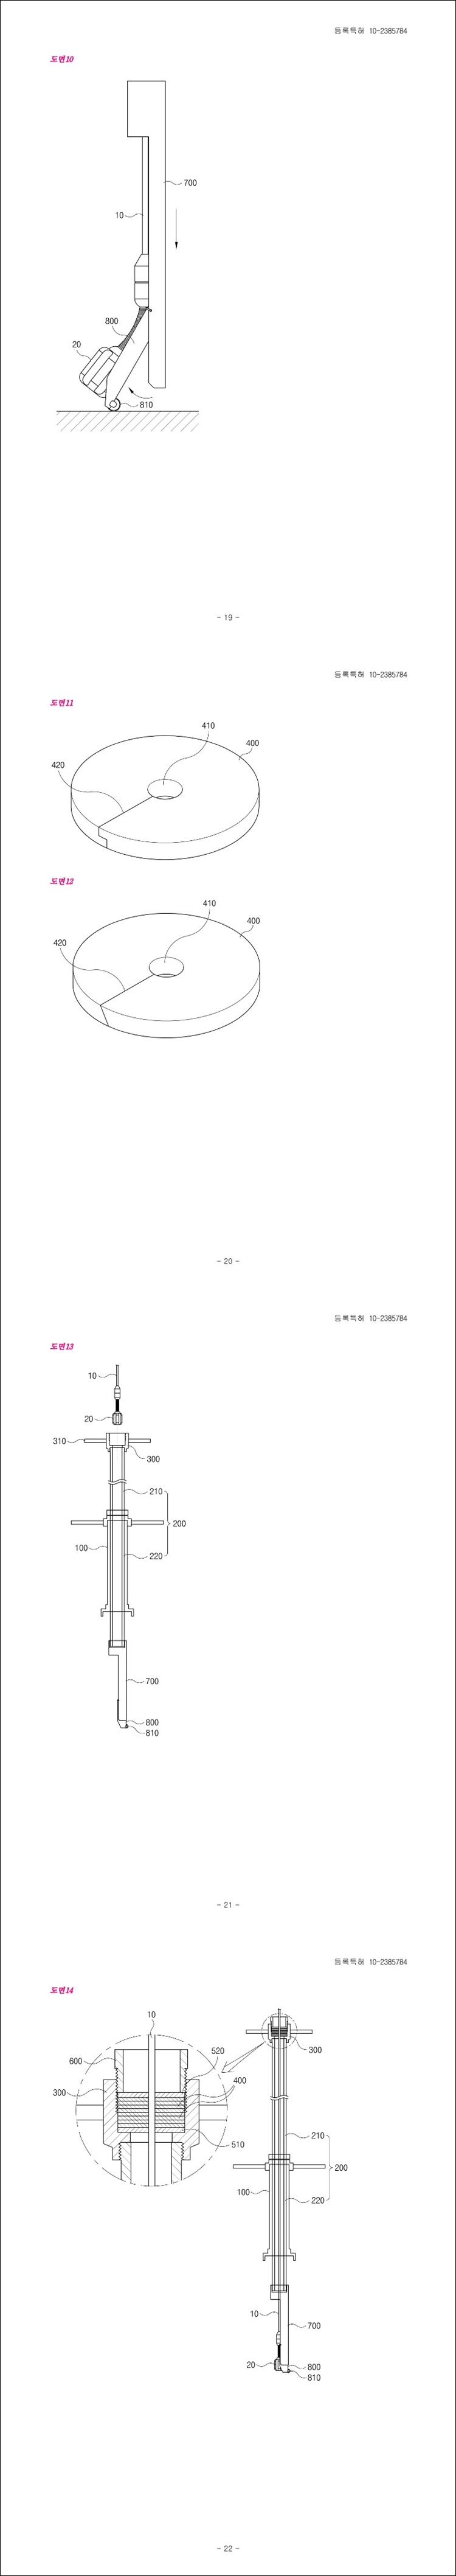 특허 제10-2385784호(부단수 내시경장치, 김희남, 김지현)